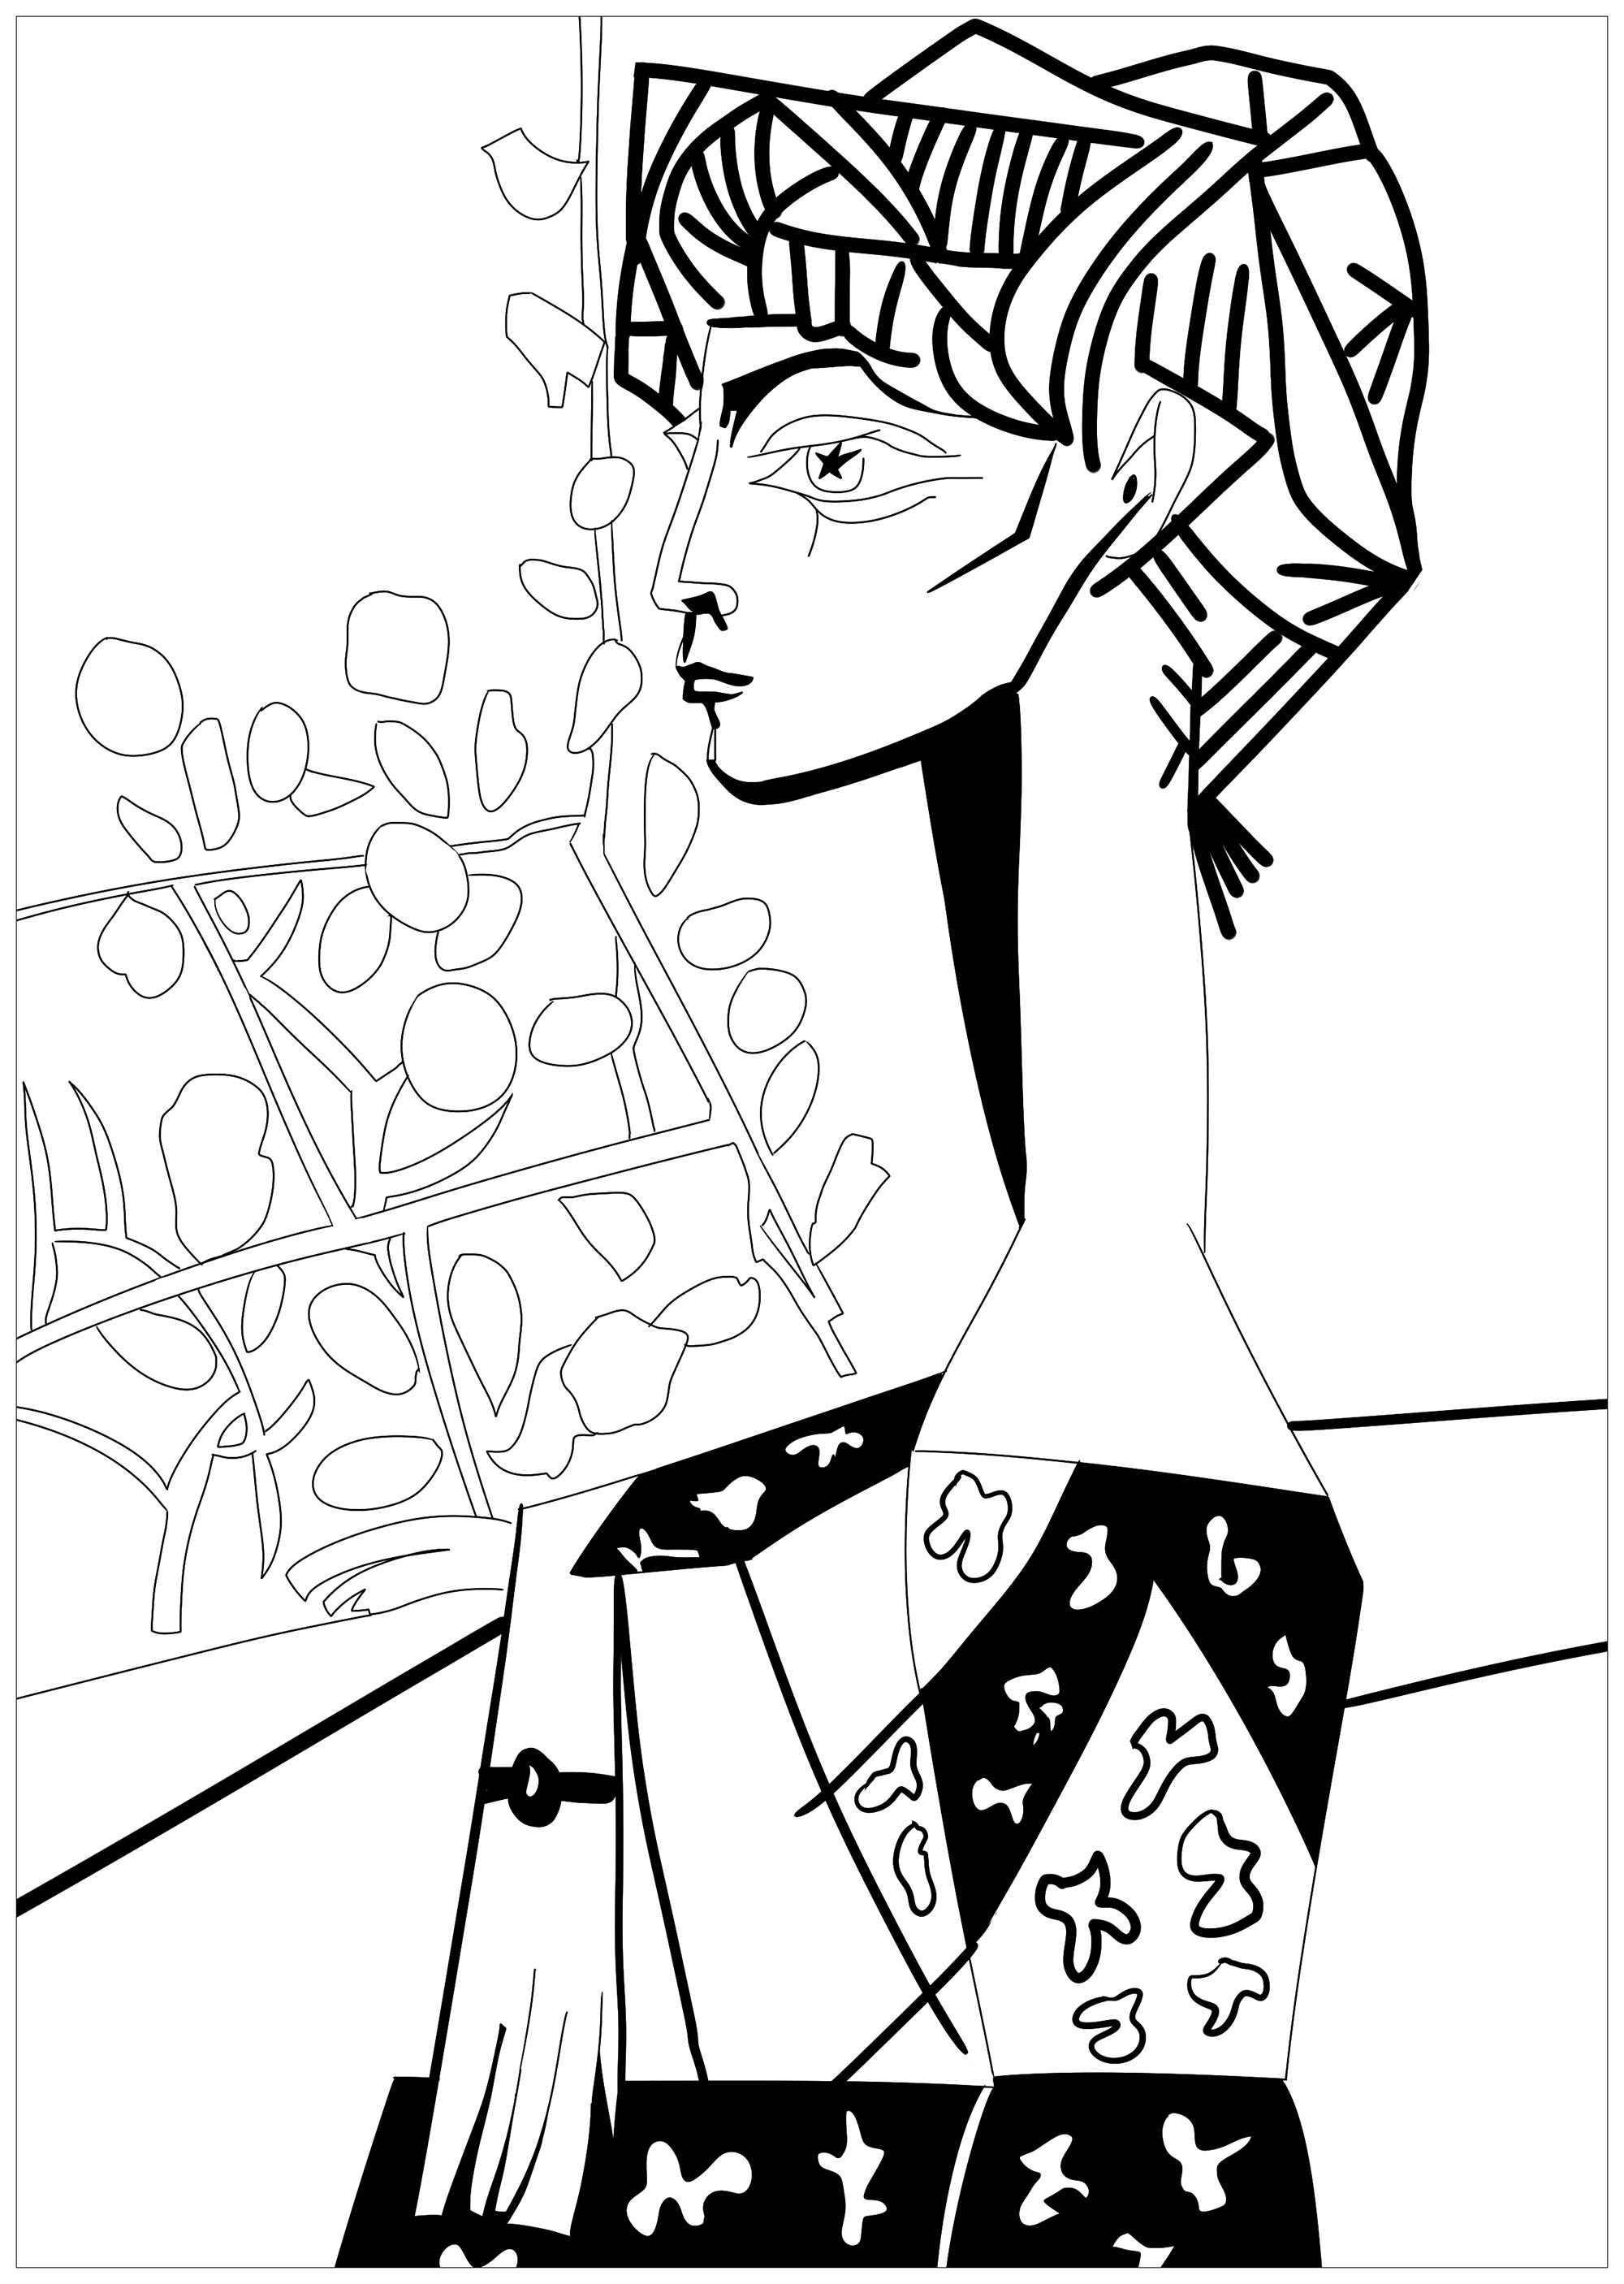 Página para colorear inspirada en una obra maestra de Pablo Picasso : Jacqueline con flores